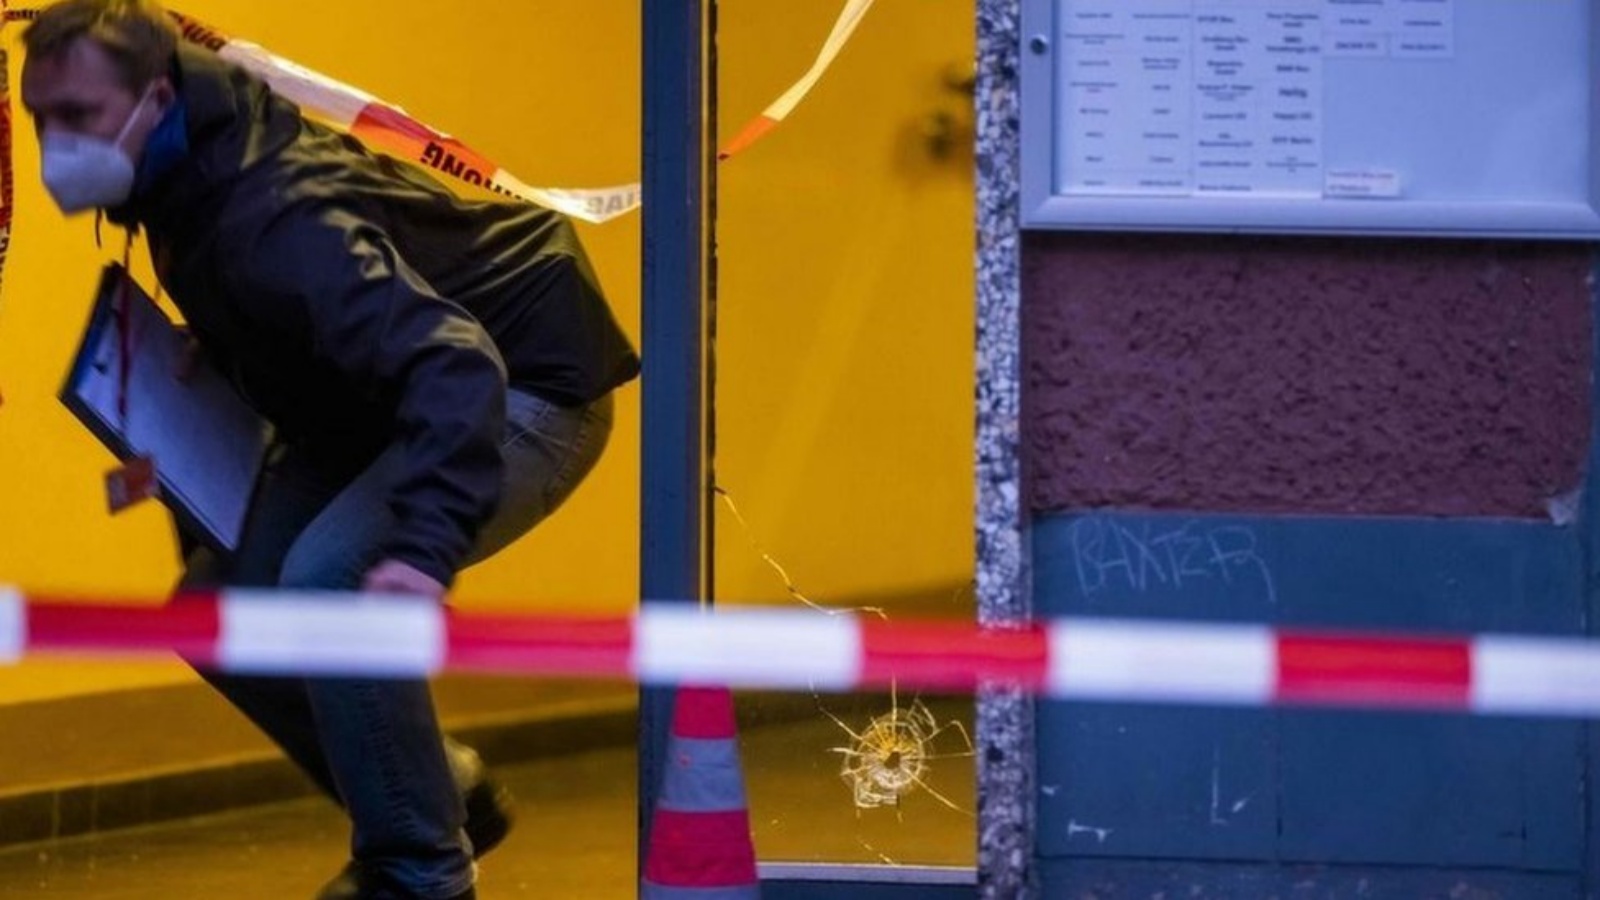 إطلاق نار في برلين يسفر عن إصابة 4 أشخاص بجروح خطيرة